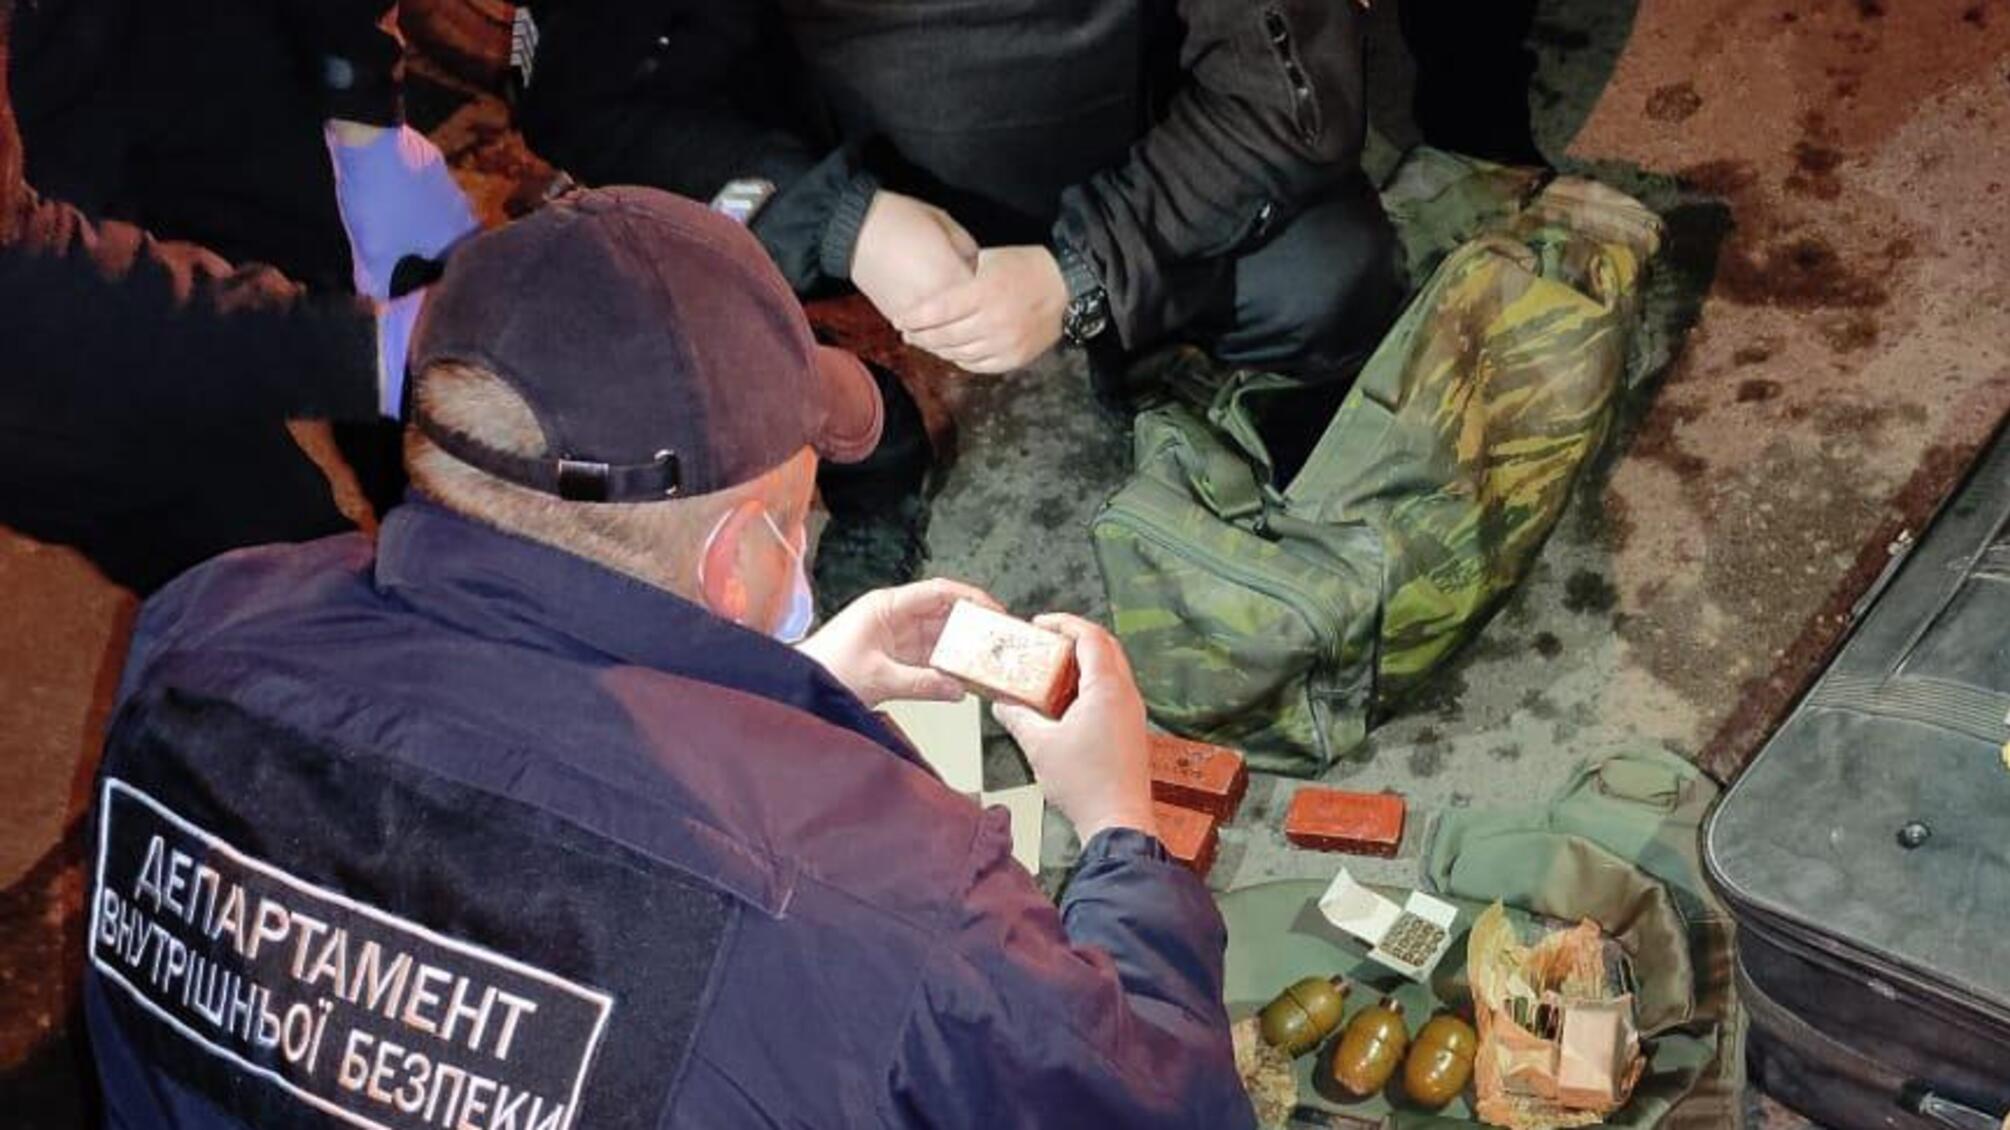 Колишній міліціонер Донецької області викритий на збуті зброї та боєприпасів – внутрішня безпека Нацполіції